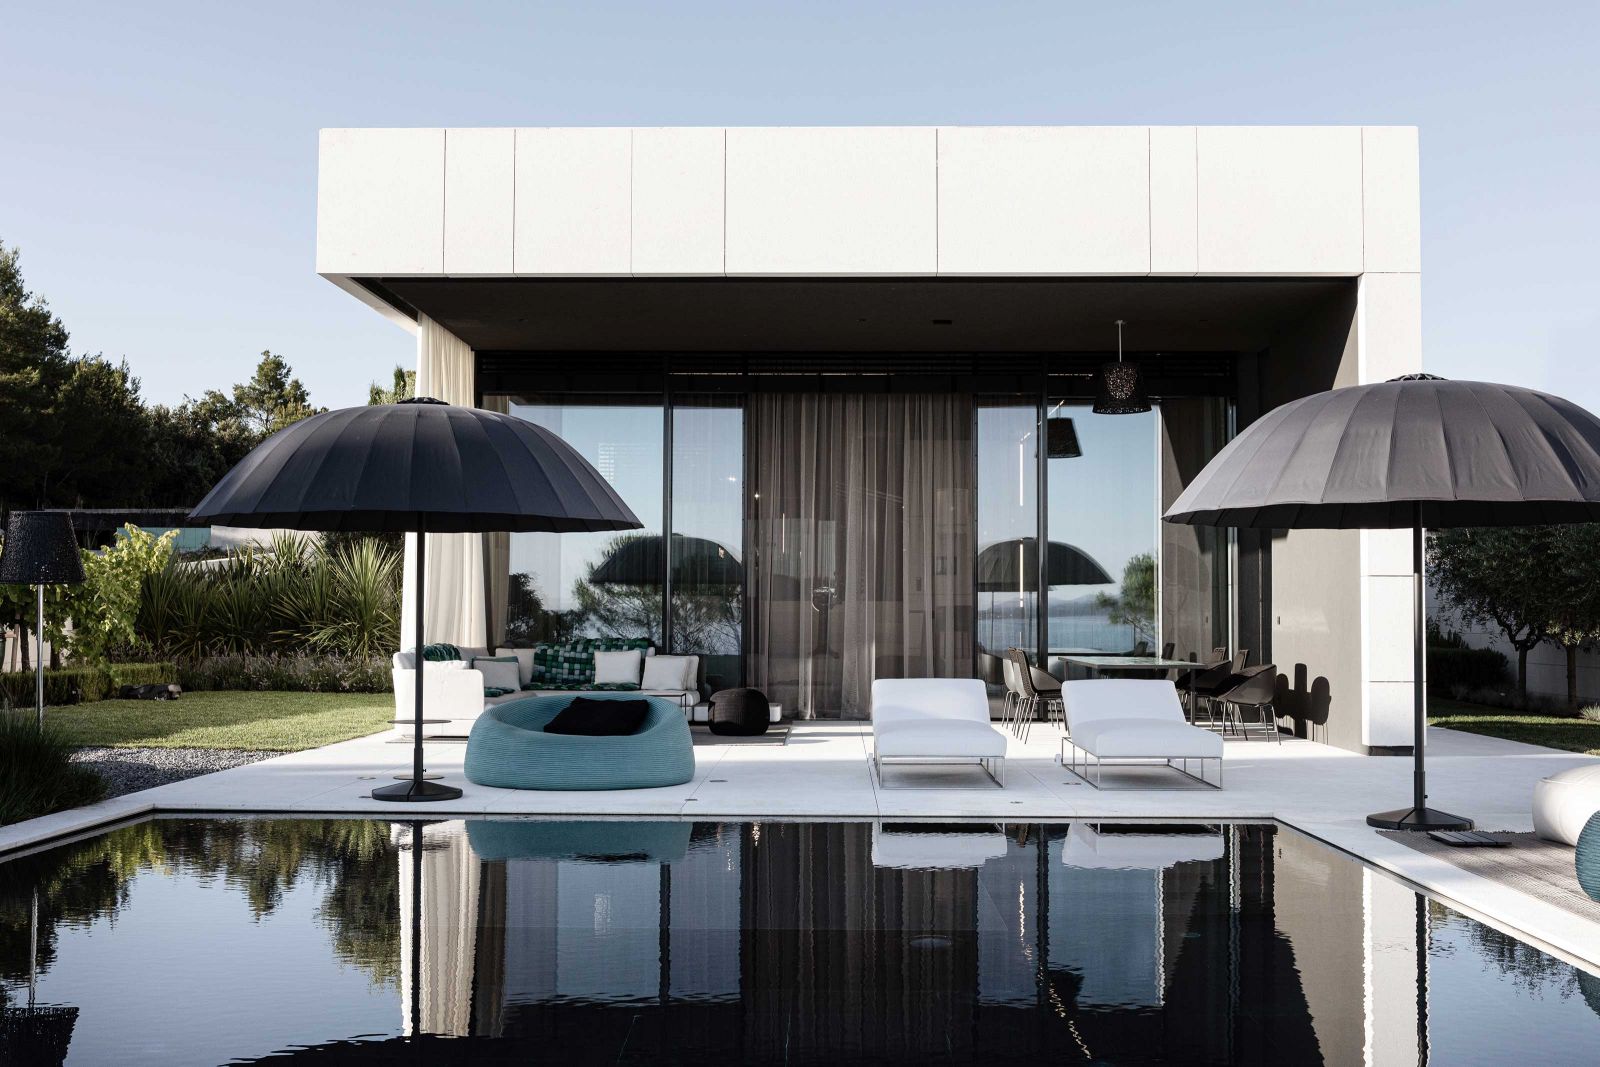 Die loungeartige Terrasse wird durch eine fünf Meter hohe Glasfront von Ess- und Wohnbereich getrennt. Bei kompletter Öffnung der Glasfronten entsteht hier eine atmosphärische Verbindung zwischen Innen und Aussen.